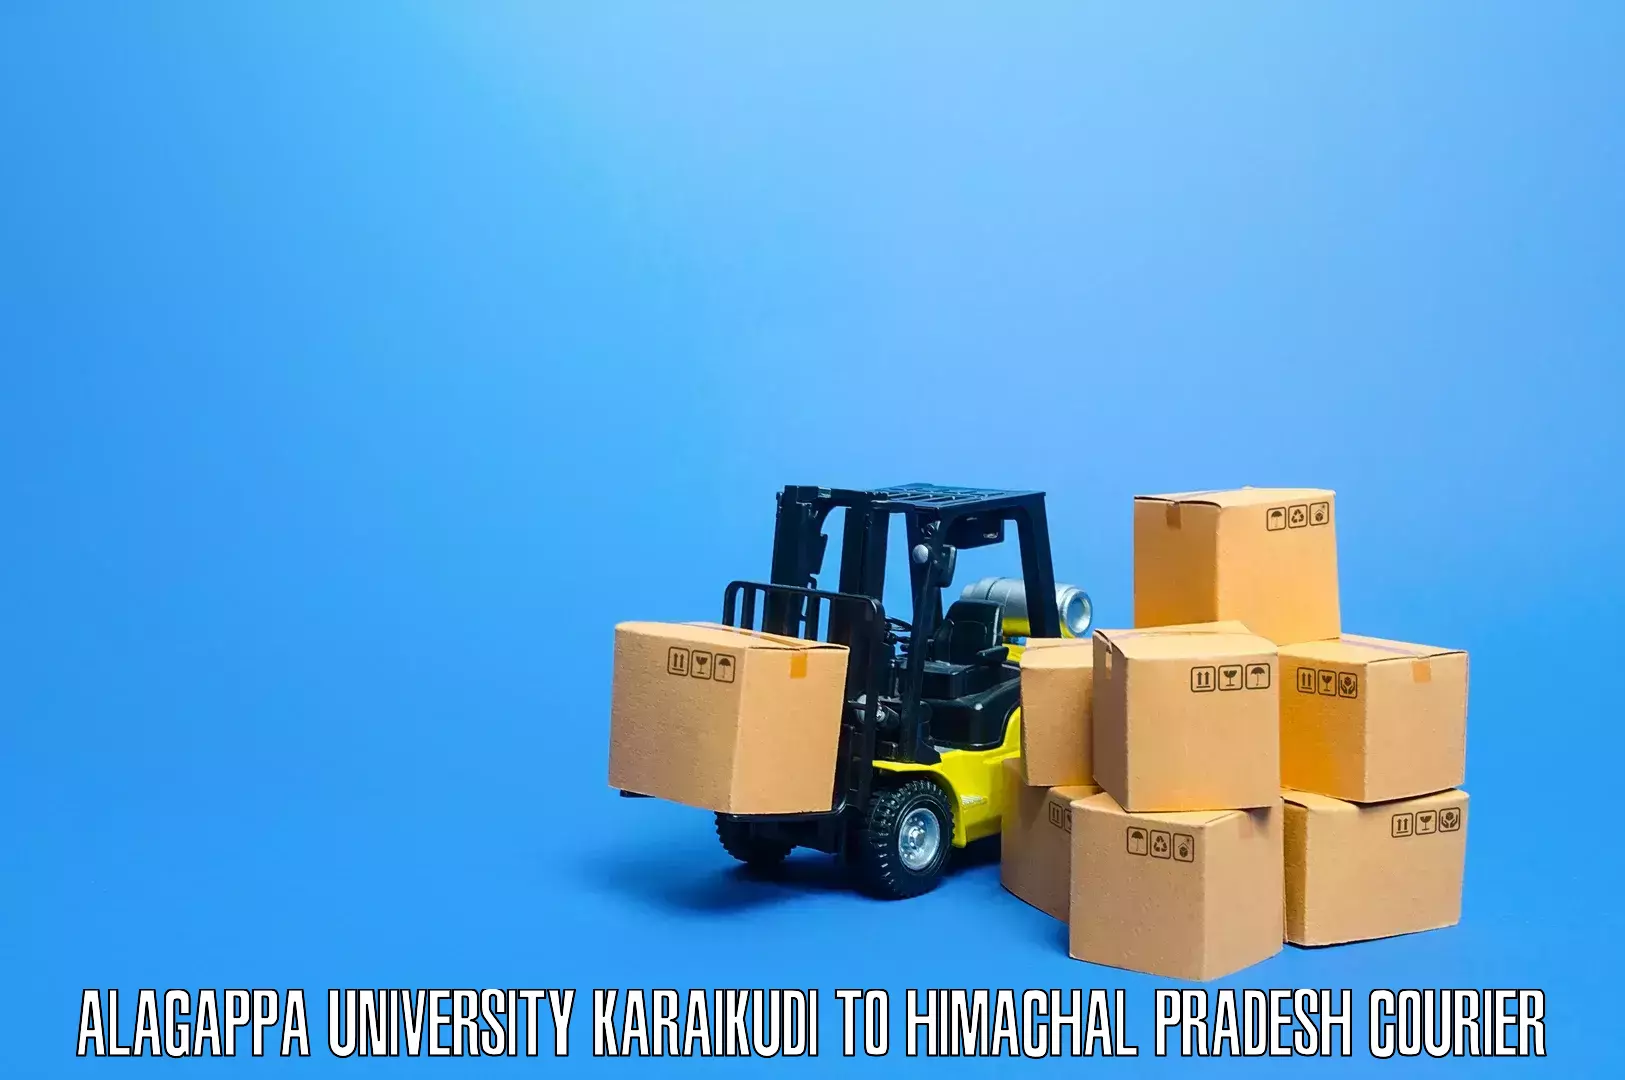 Safe furniture moving Alagappa University Karaikudi to Mandi